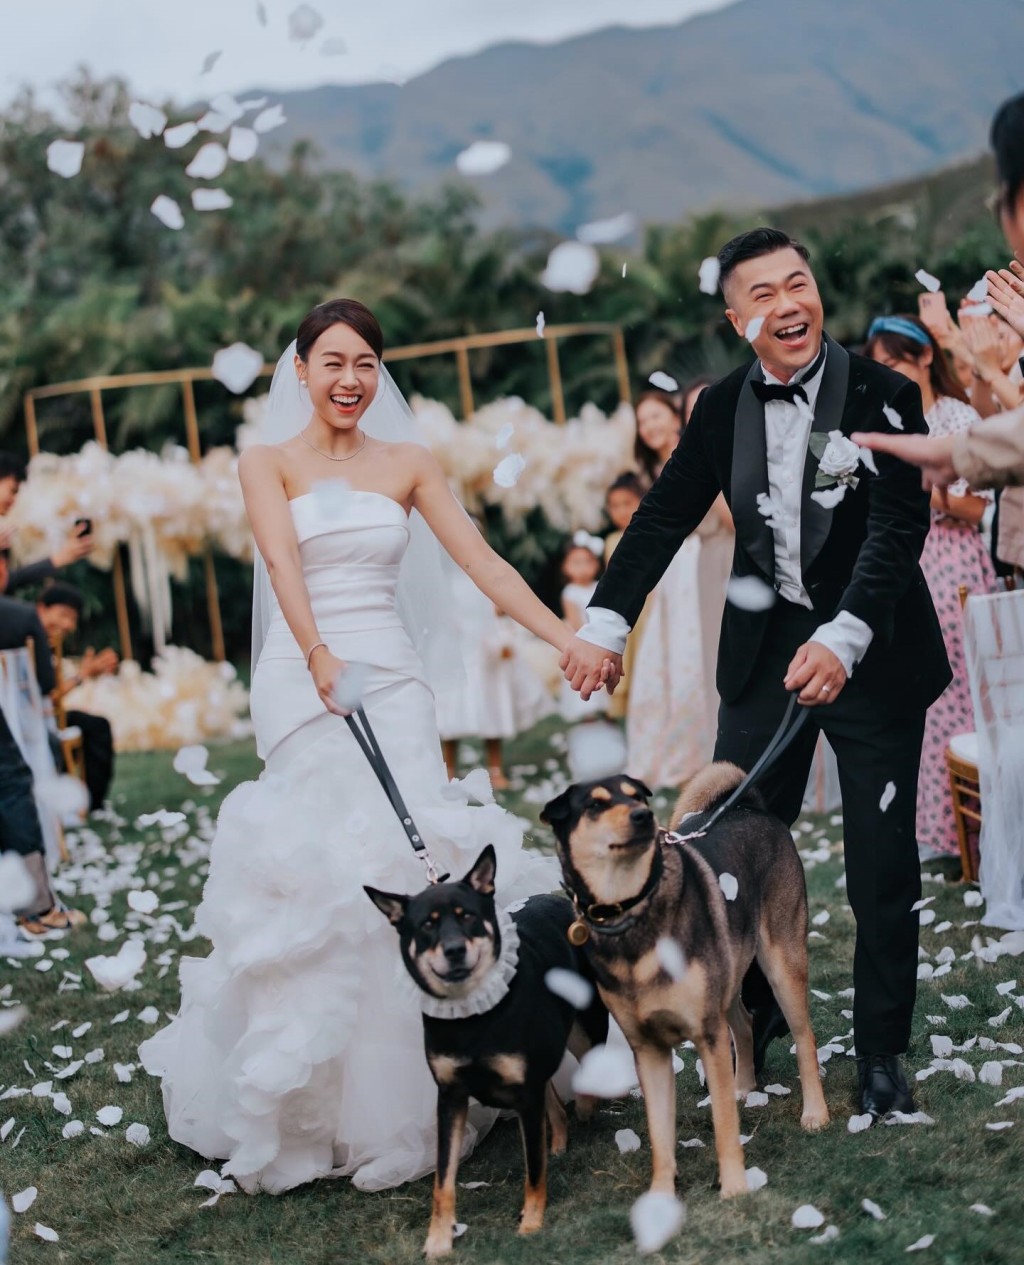 愛犬更現身於婚禮上。